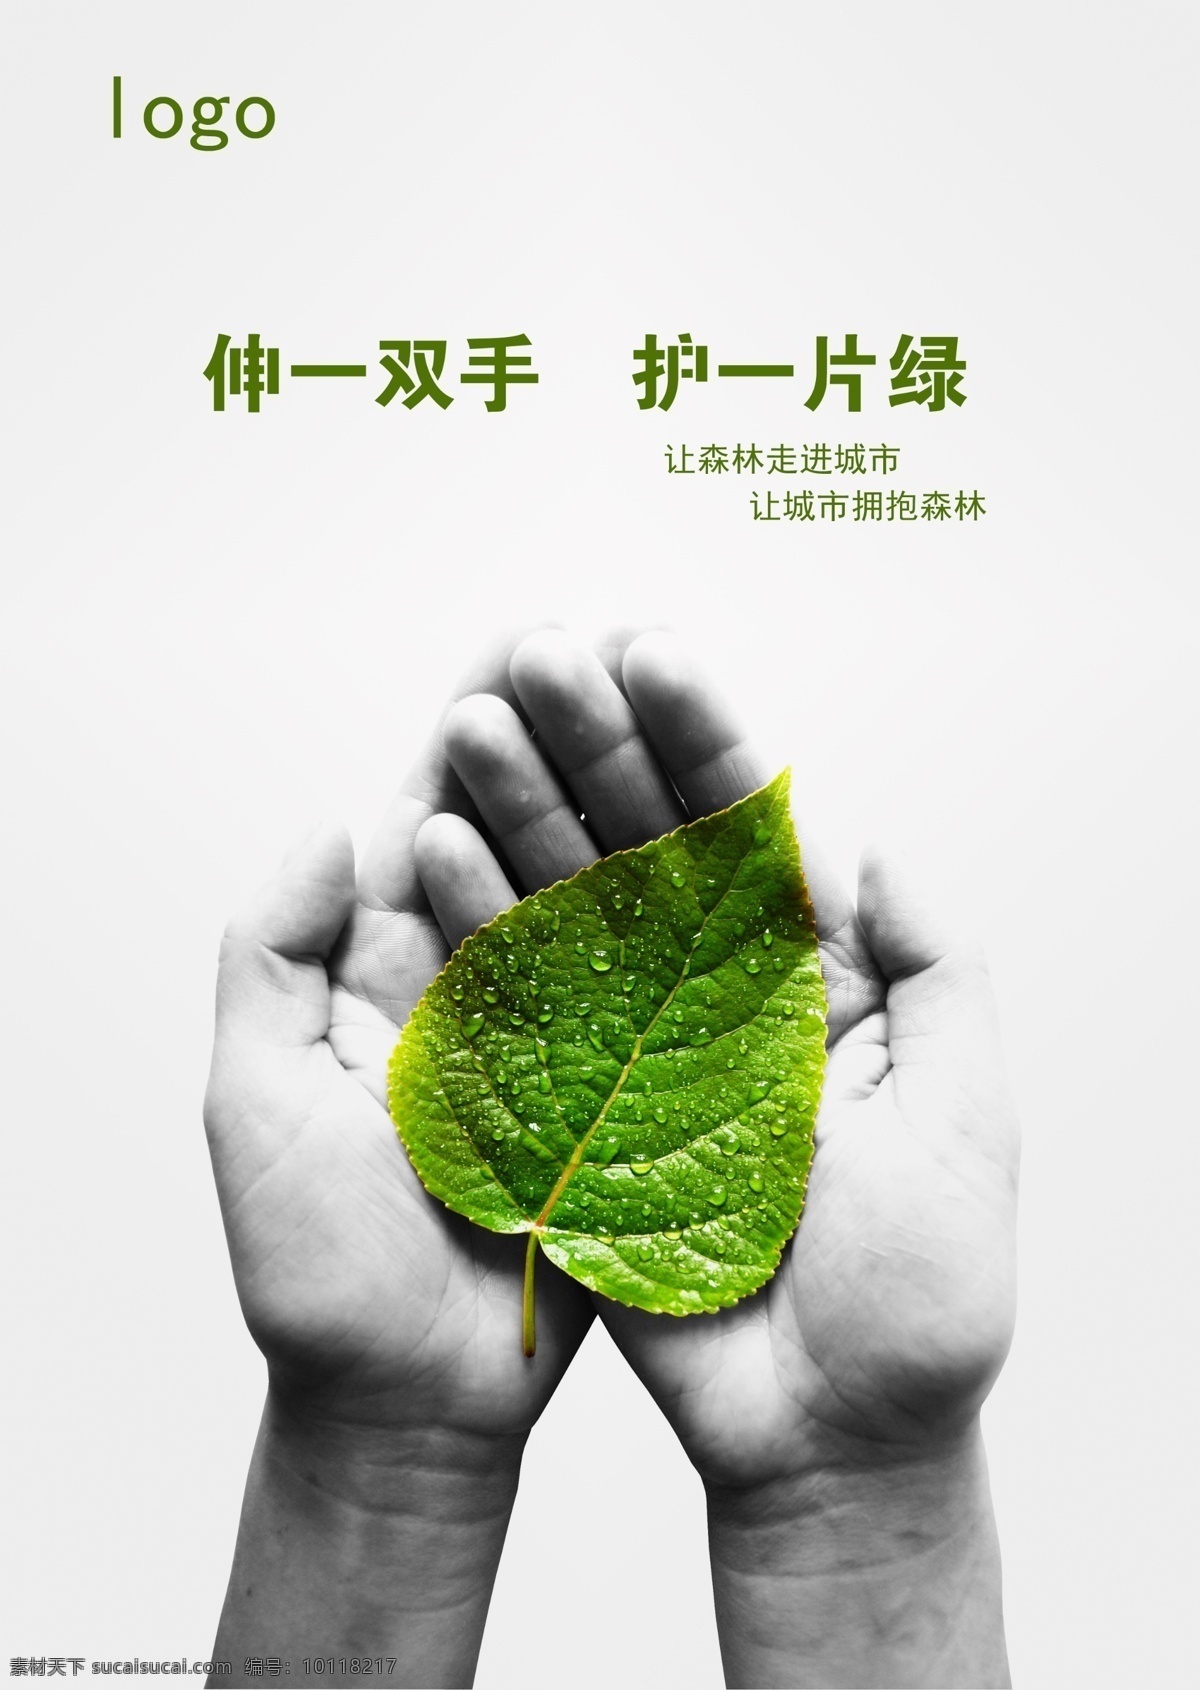 环保公益海报 公益海报设计 环保 公益 环境 保护 宣传 绿叶 森林 城市 双手 创意